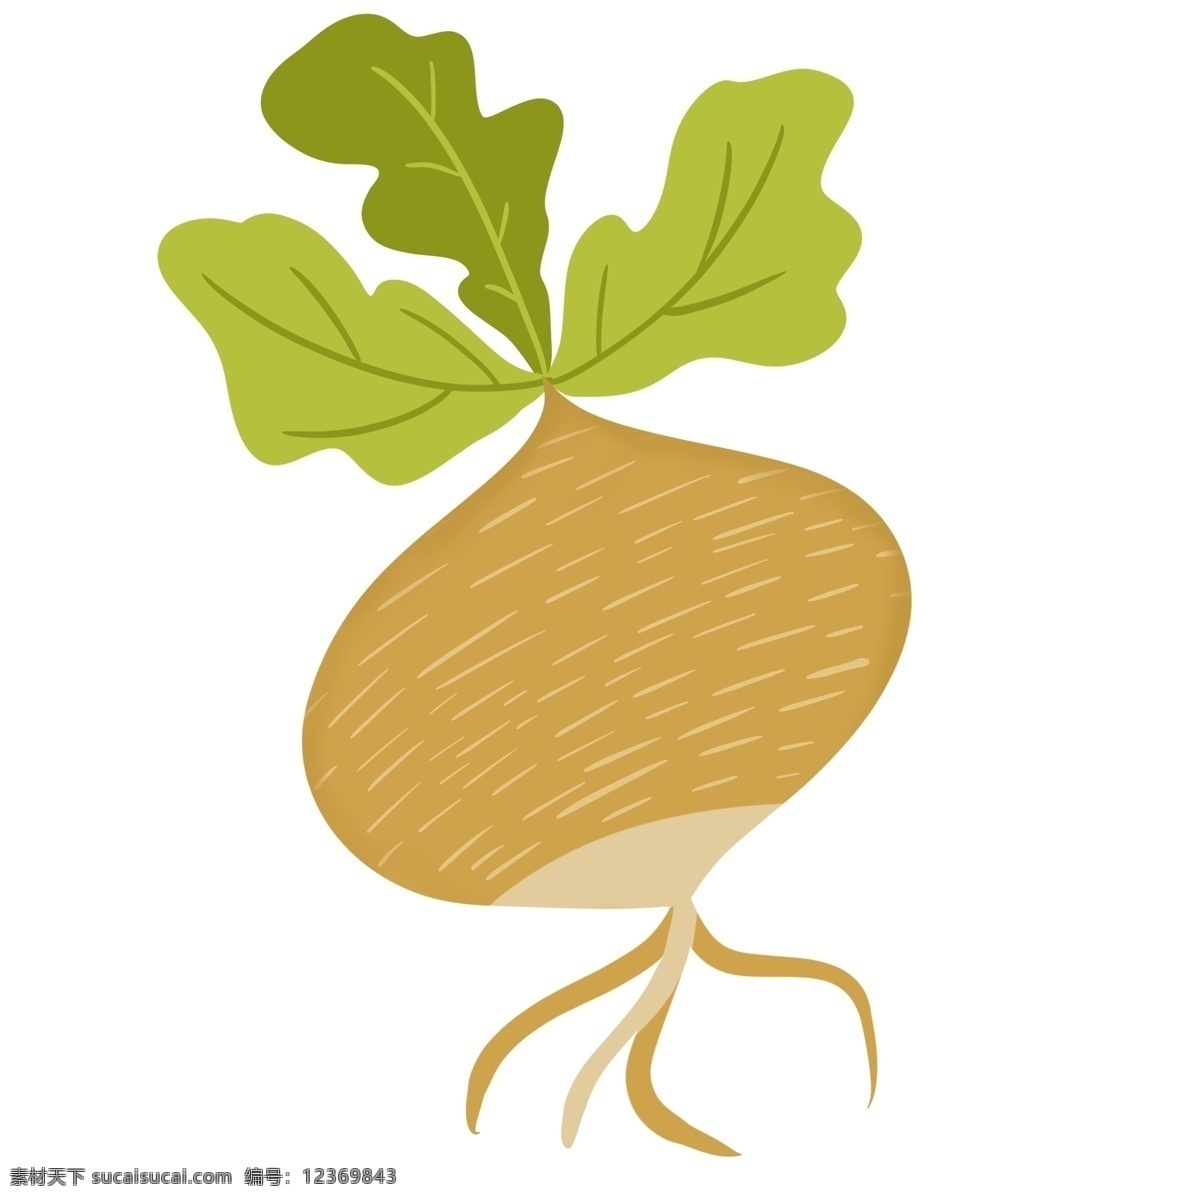 土 萝卜 蔬菜 手绘 卡通 可爱 黄色 土萝卜 食物 美食 做菜 菜 种萝卜 拔萝卜 装饰